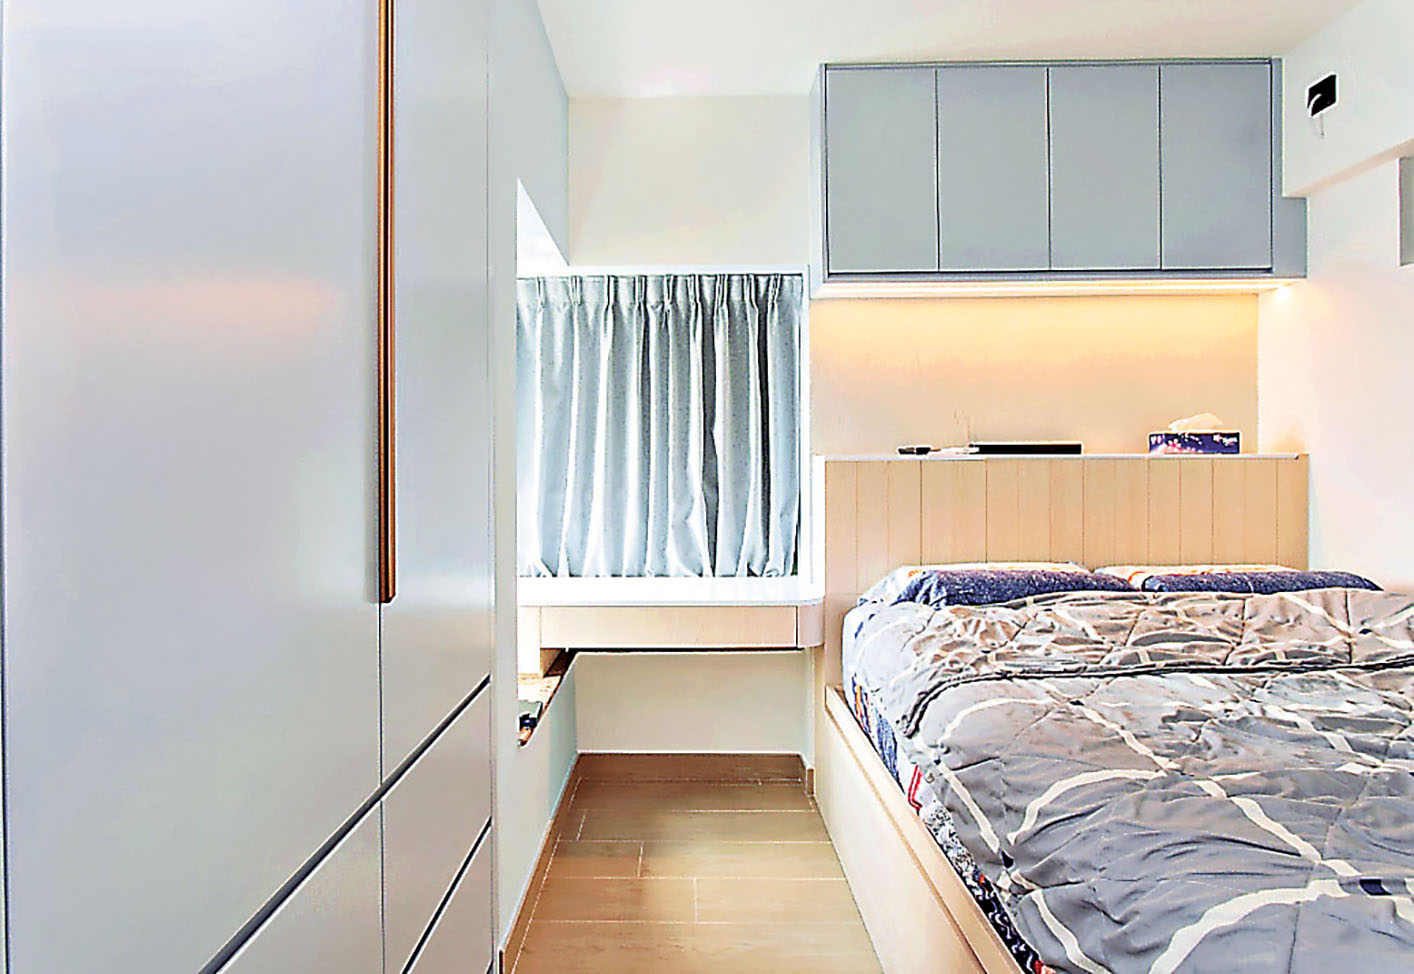 ■睡房的淺藍色衣櫃、吊櫃和窗簾非常的搭配。